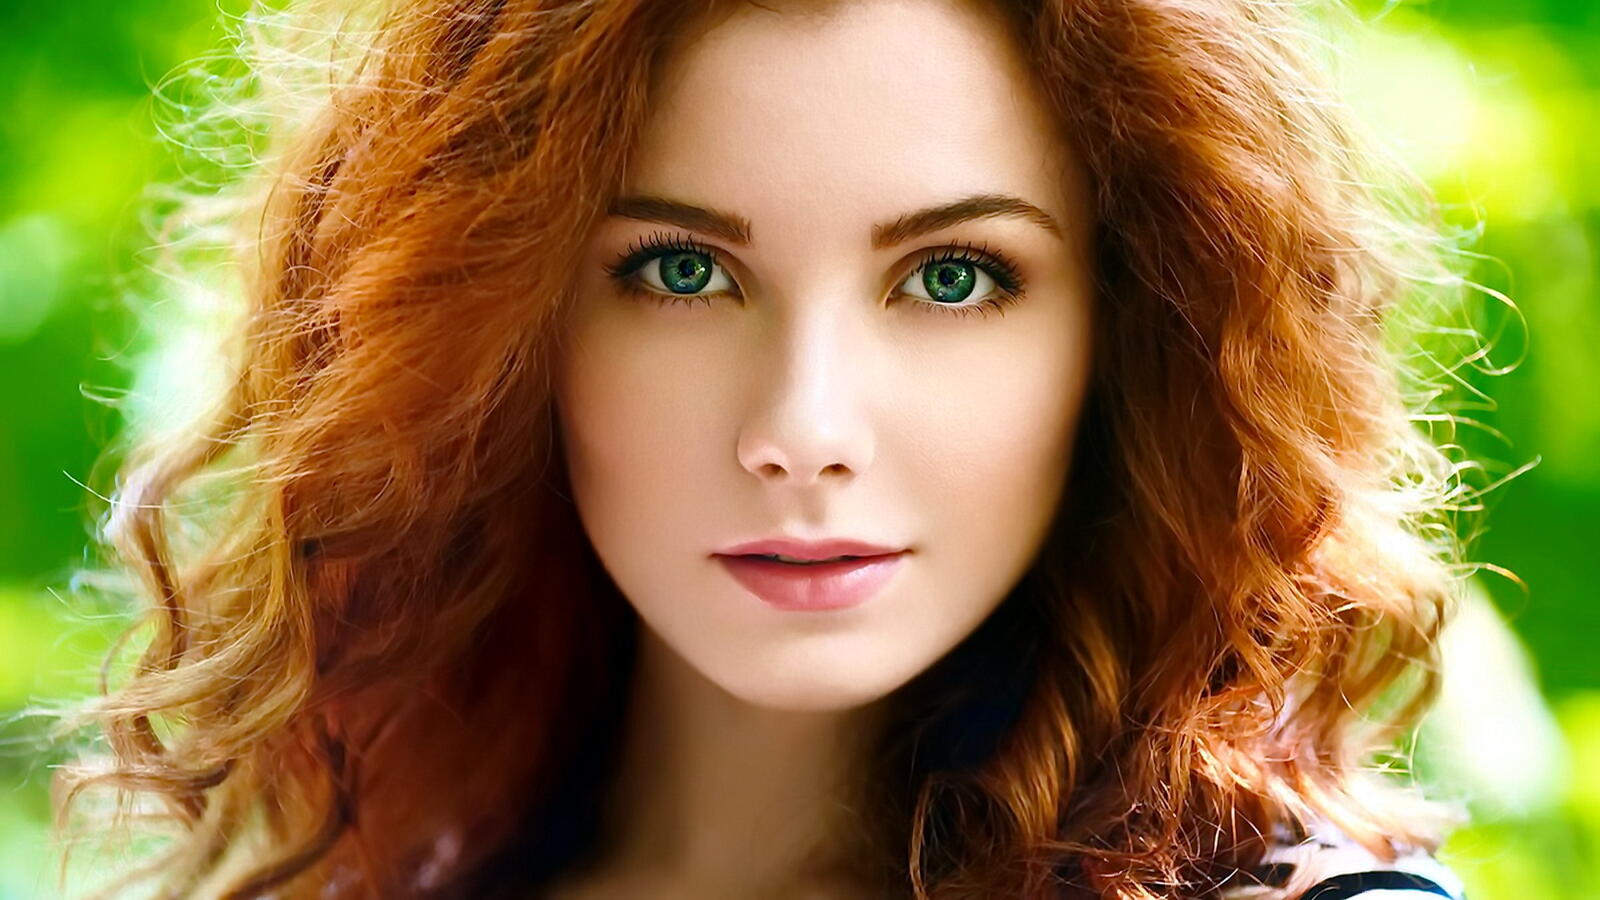 Бесплатное фото Портрет девушки с рыжими волосами